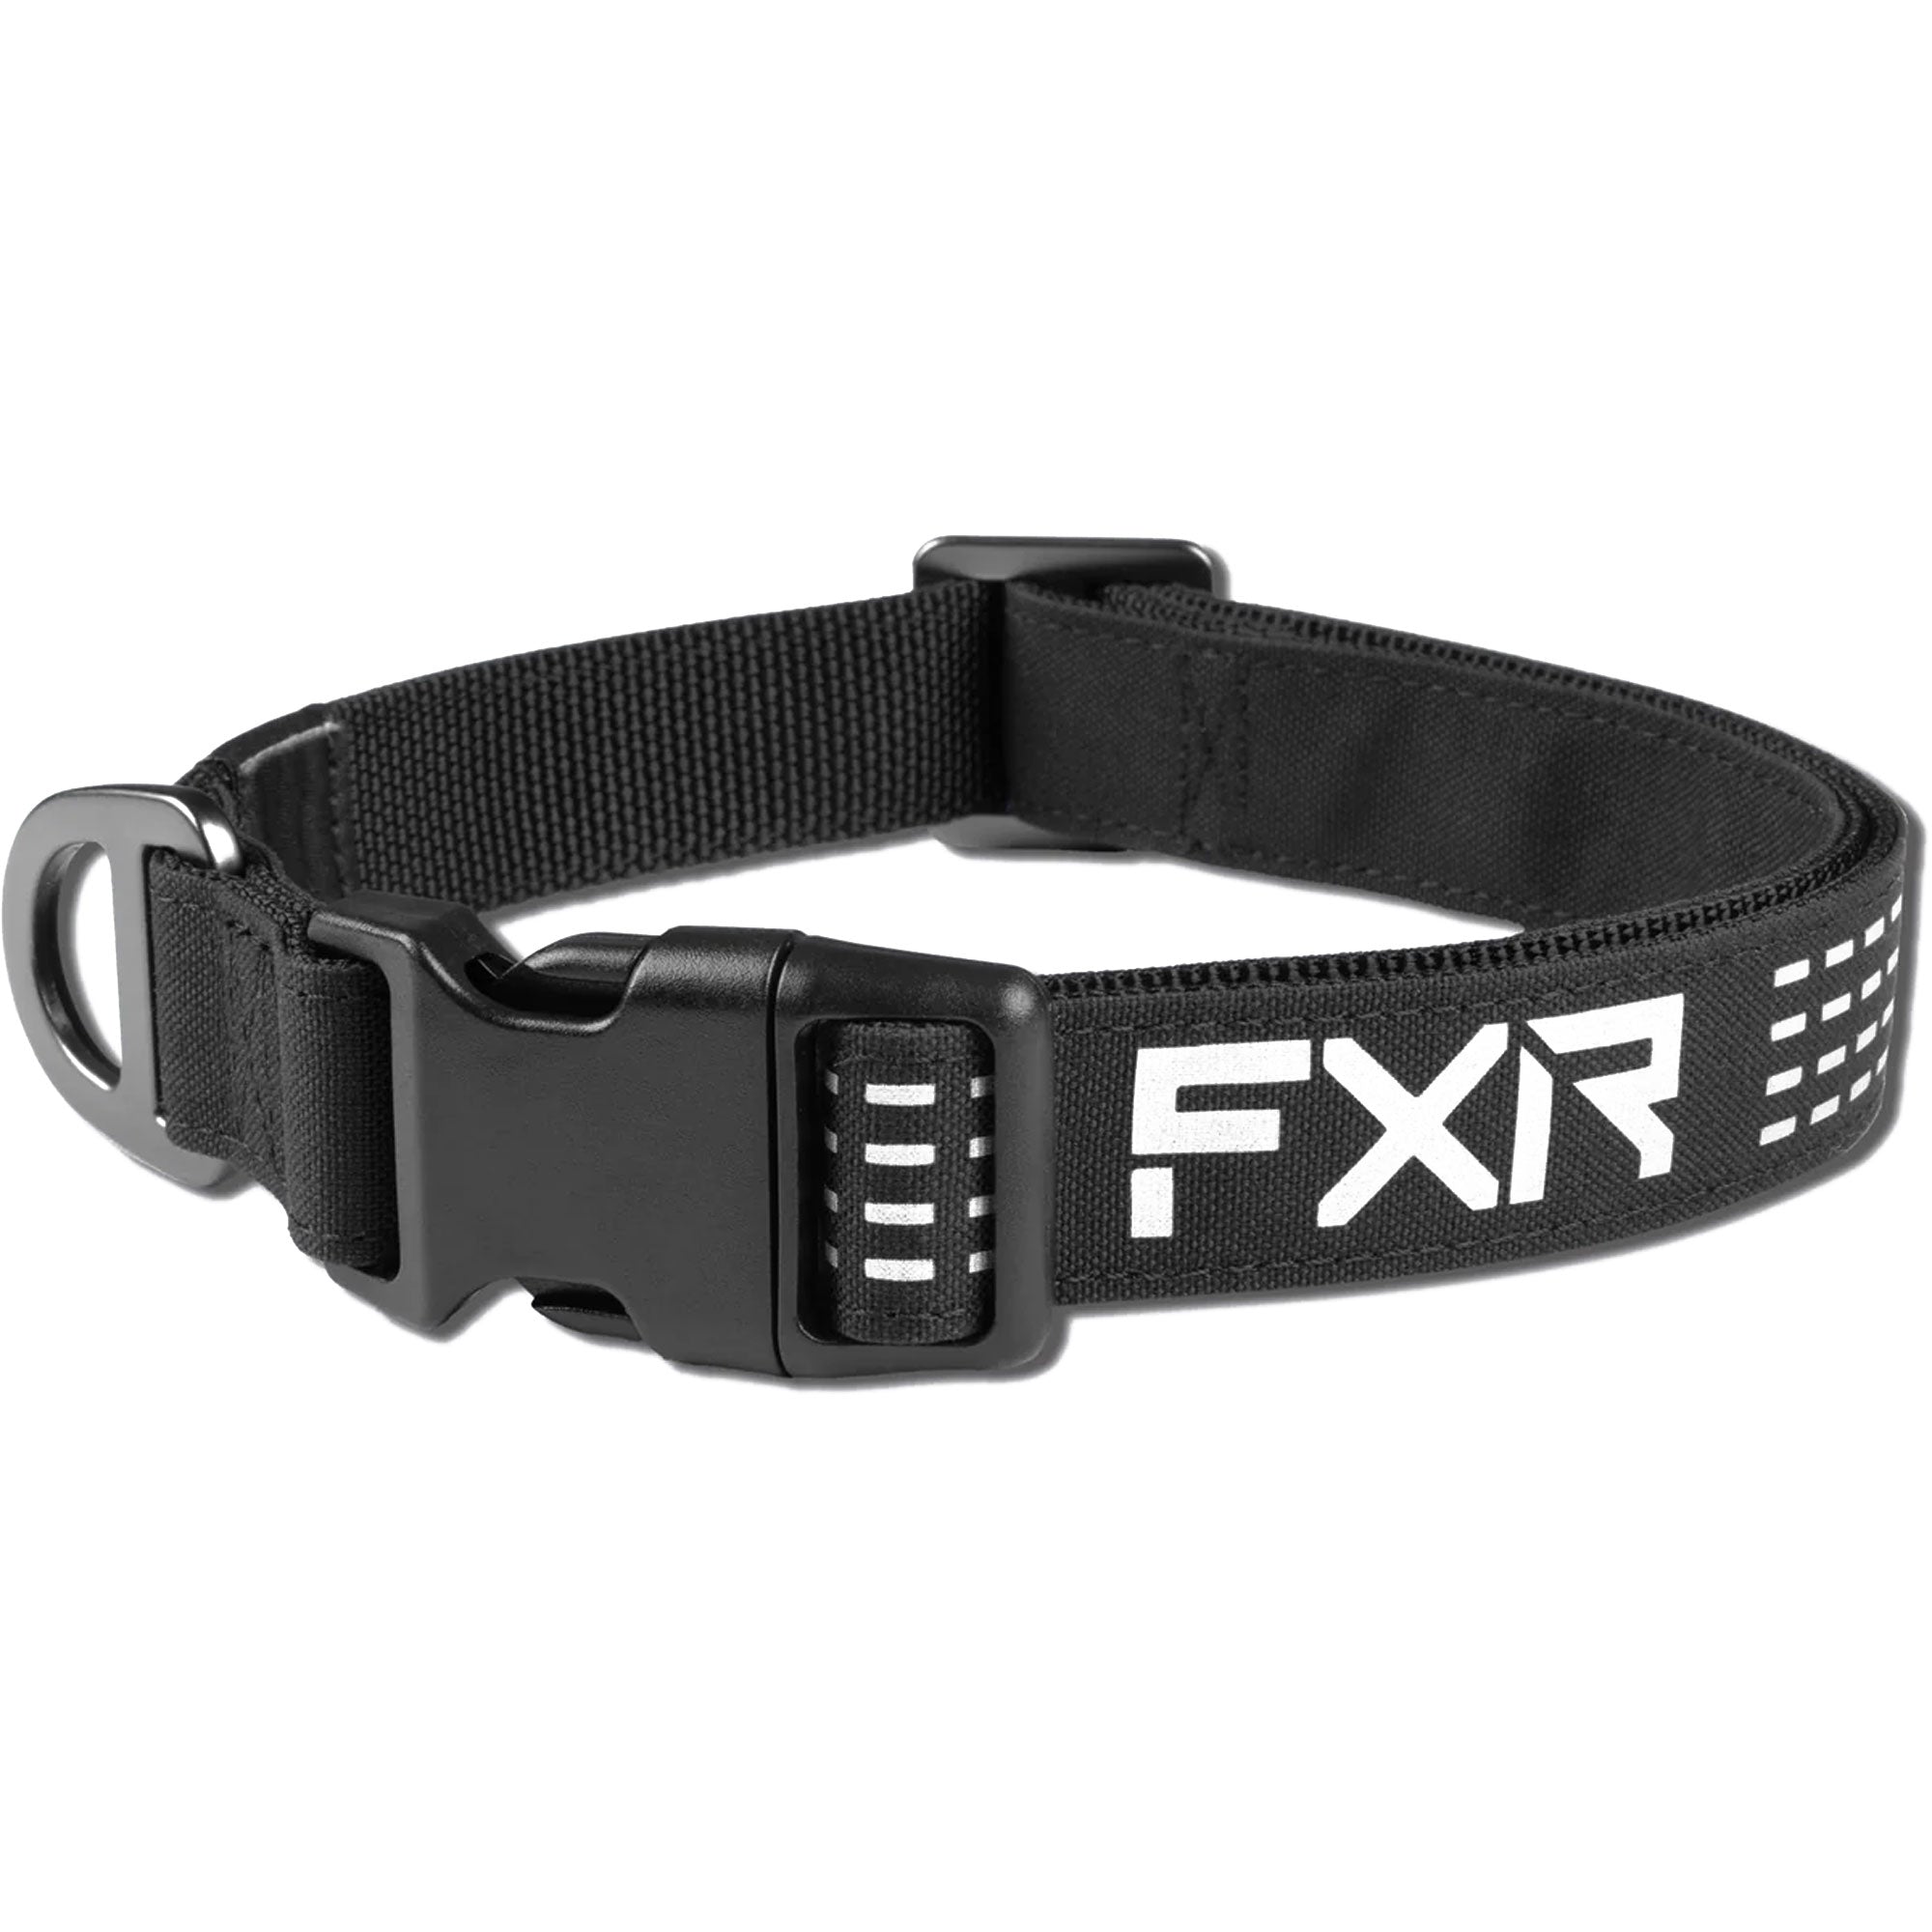 FXR Dog Collar